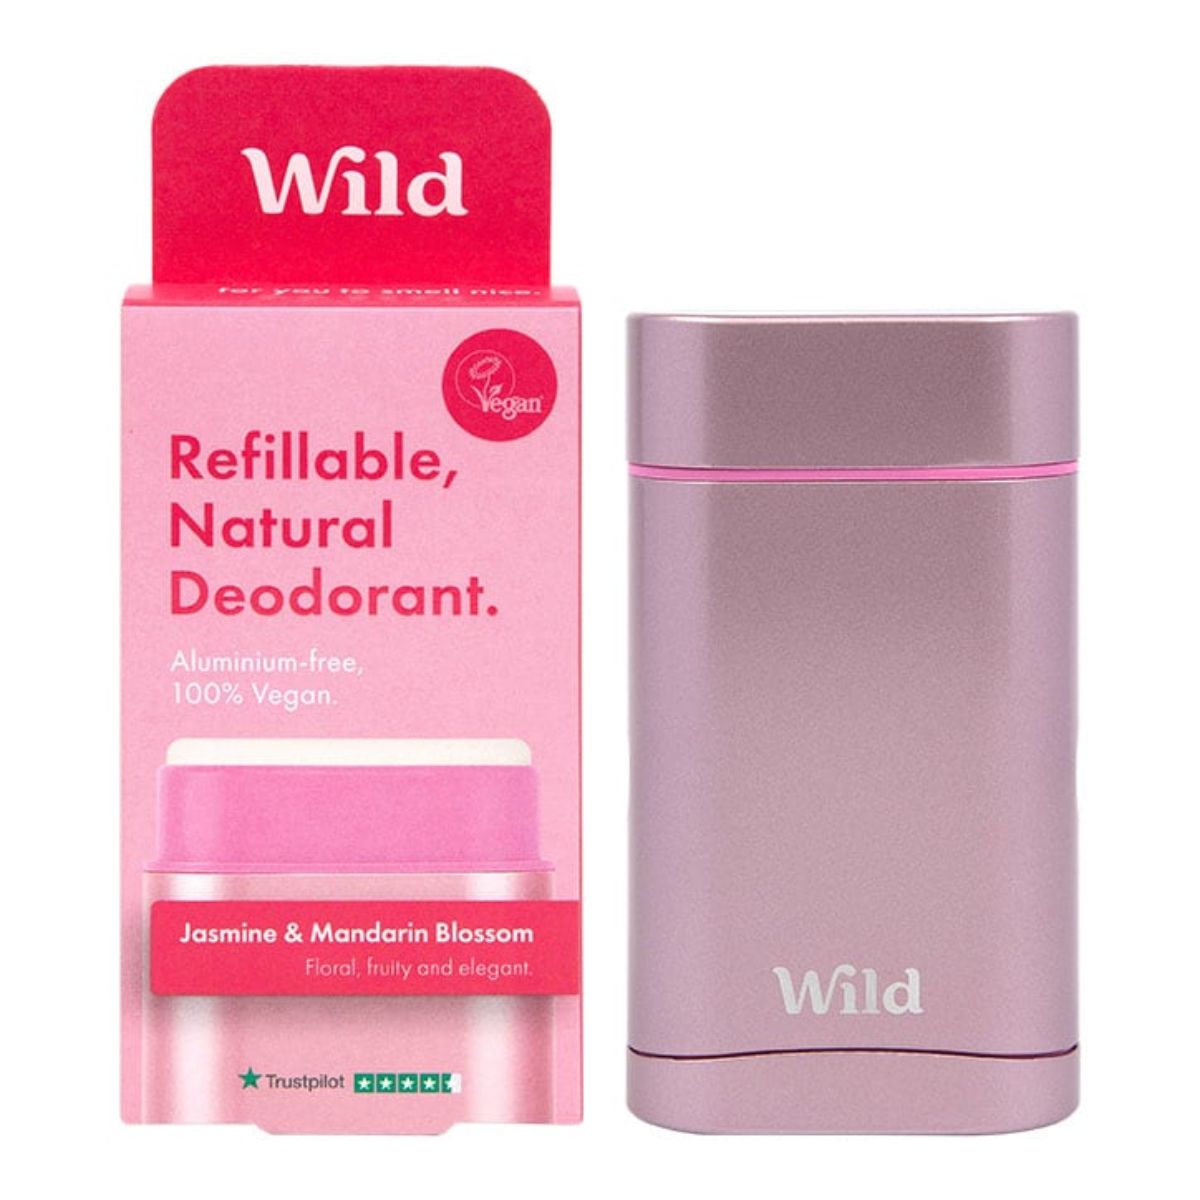 WILD Deodorant